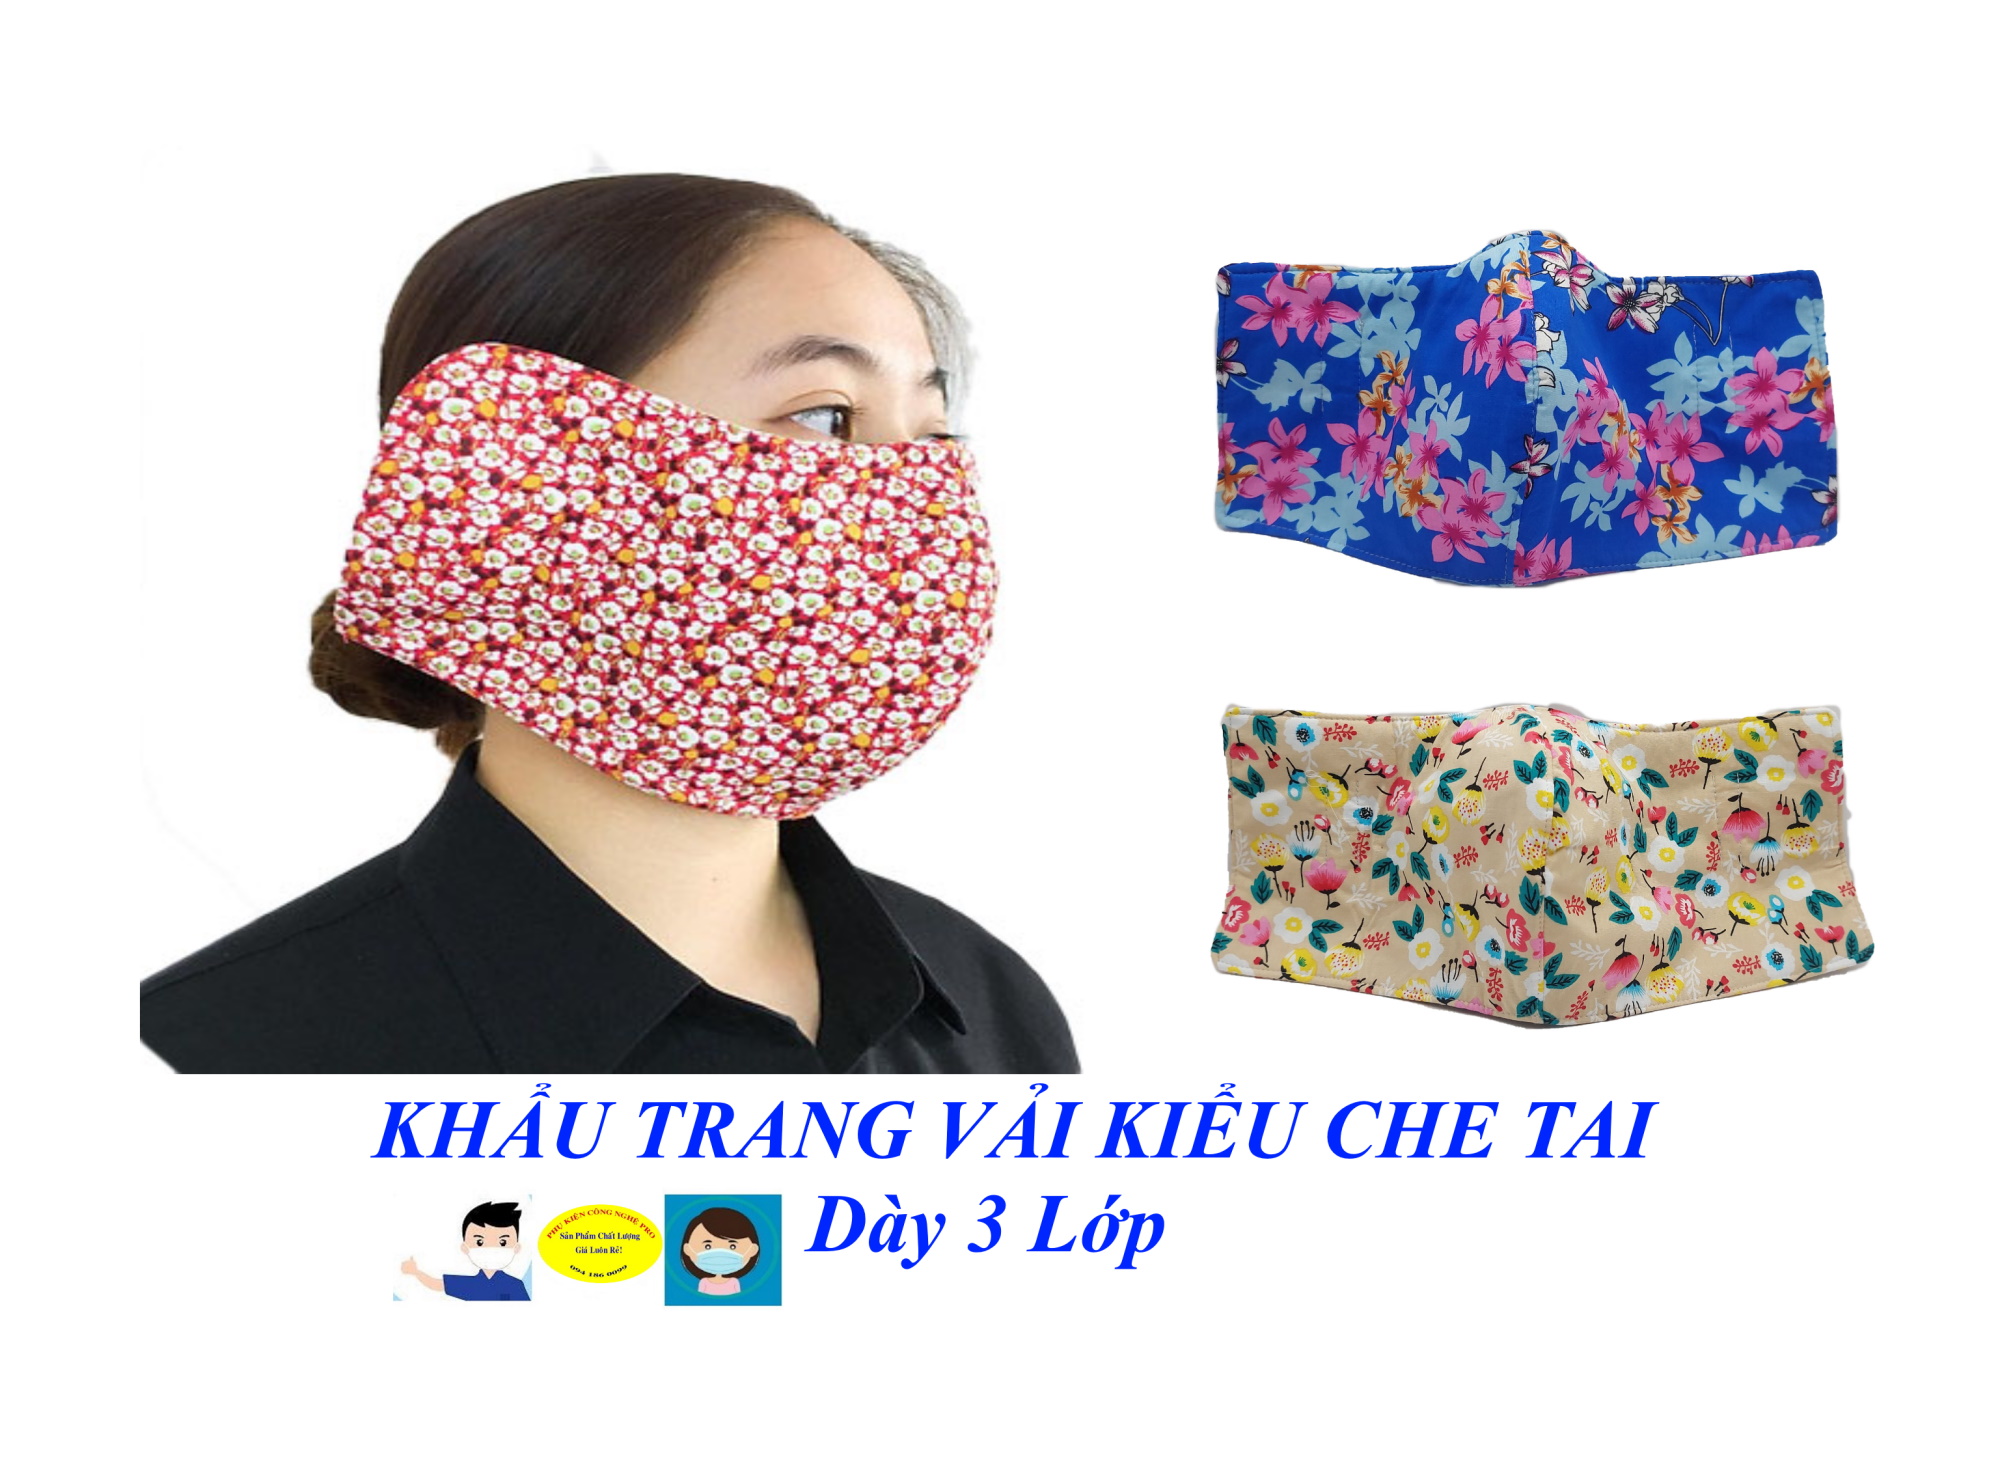 Khẩu trang vải nữ Kiểu che tai Dày 3 lớp In hình hoa bất kỳ Giúp chống nắng, Chống bụi, Bảo vệ sức khỏe, Phòng dịch bệnh